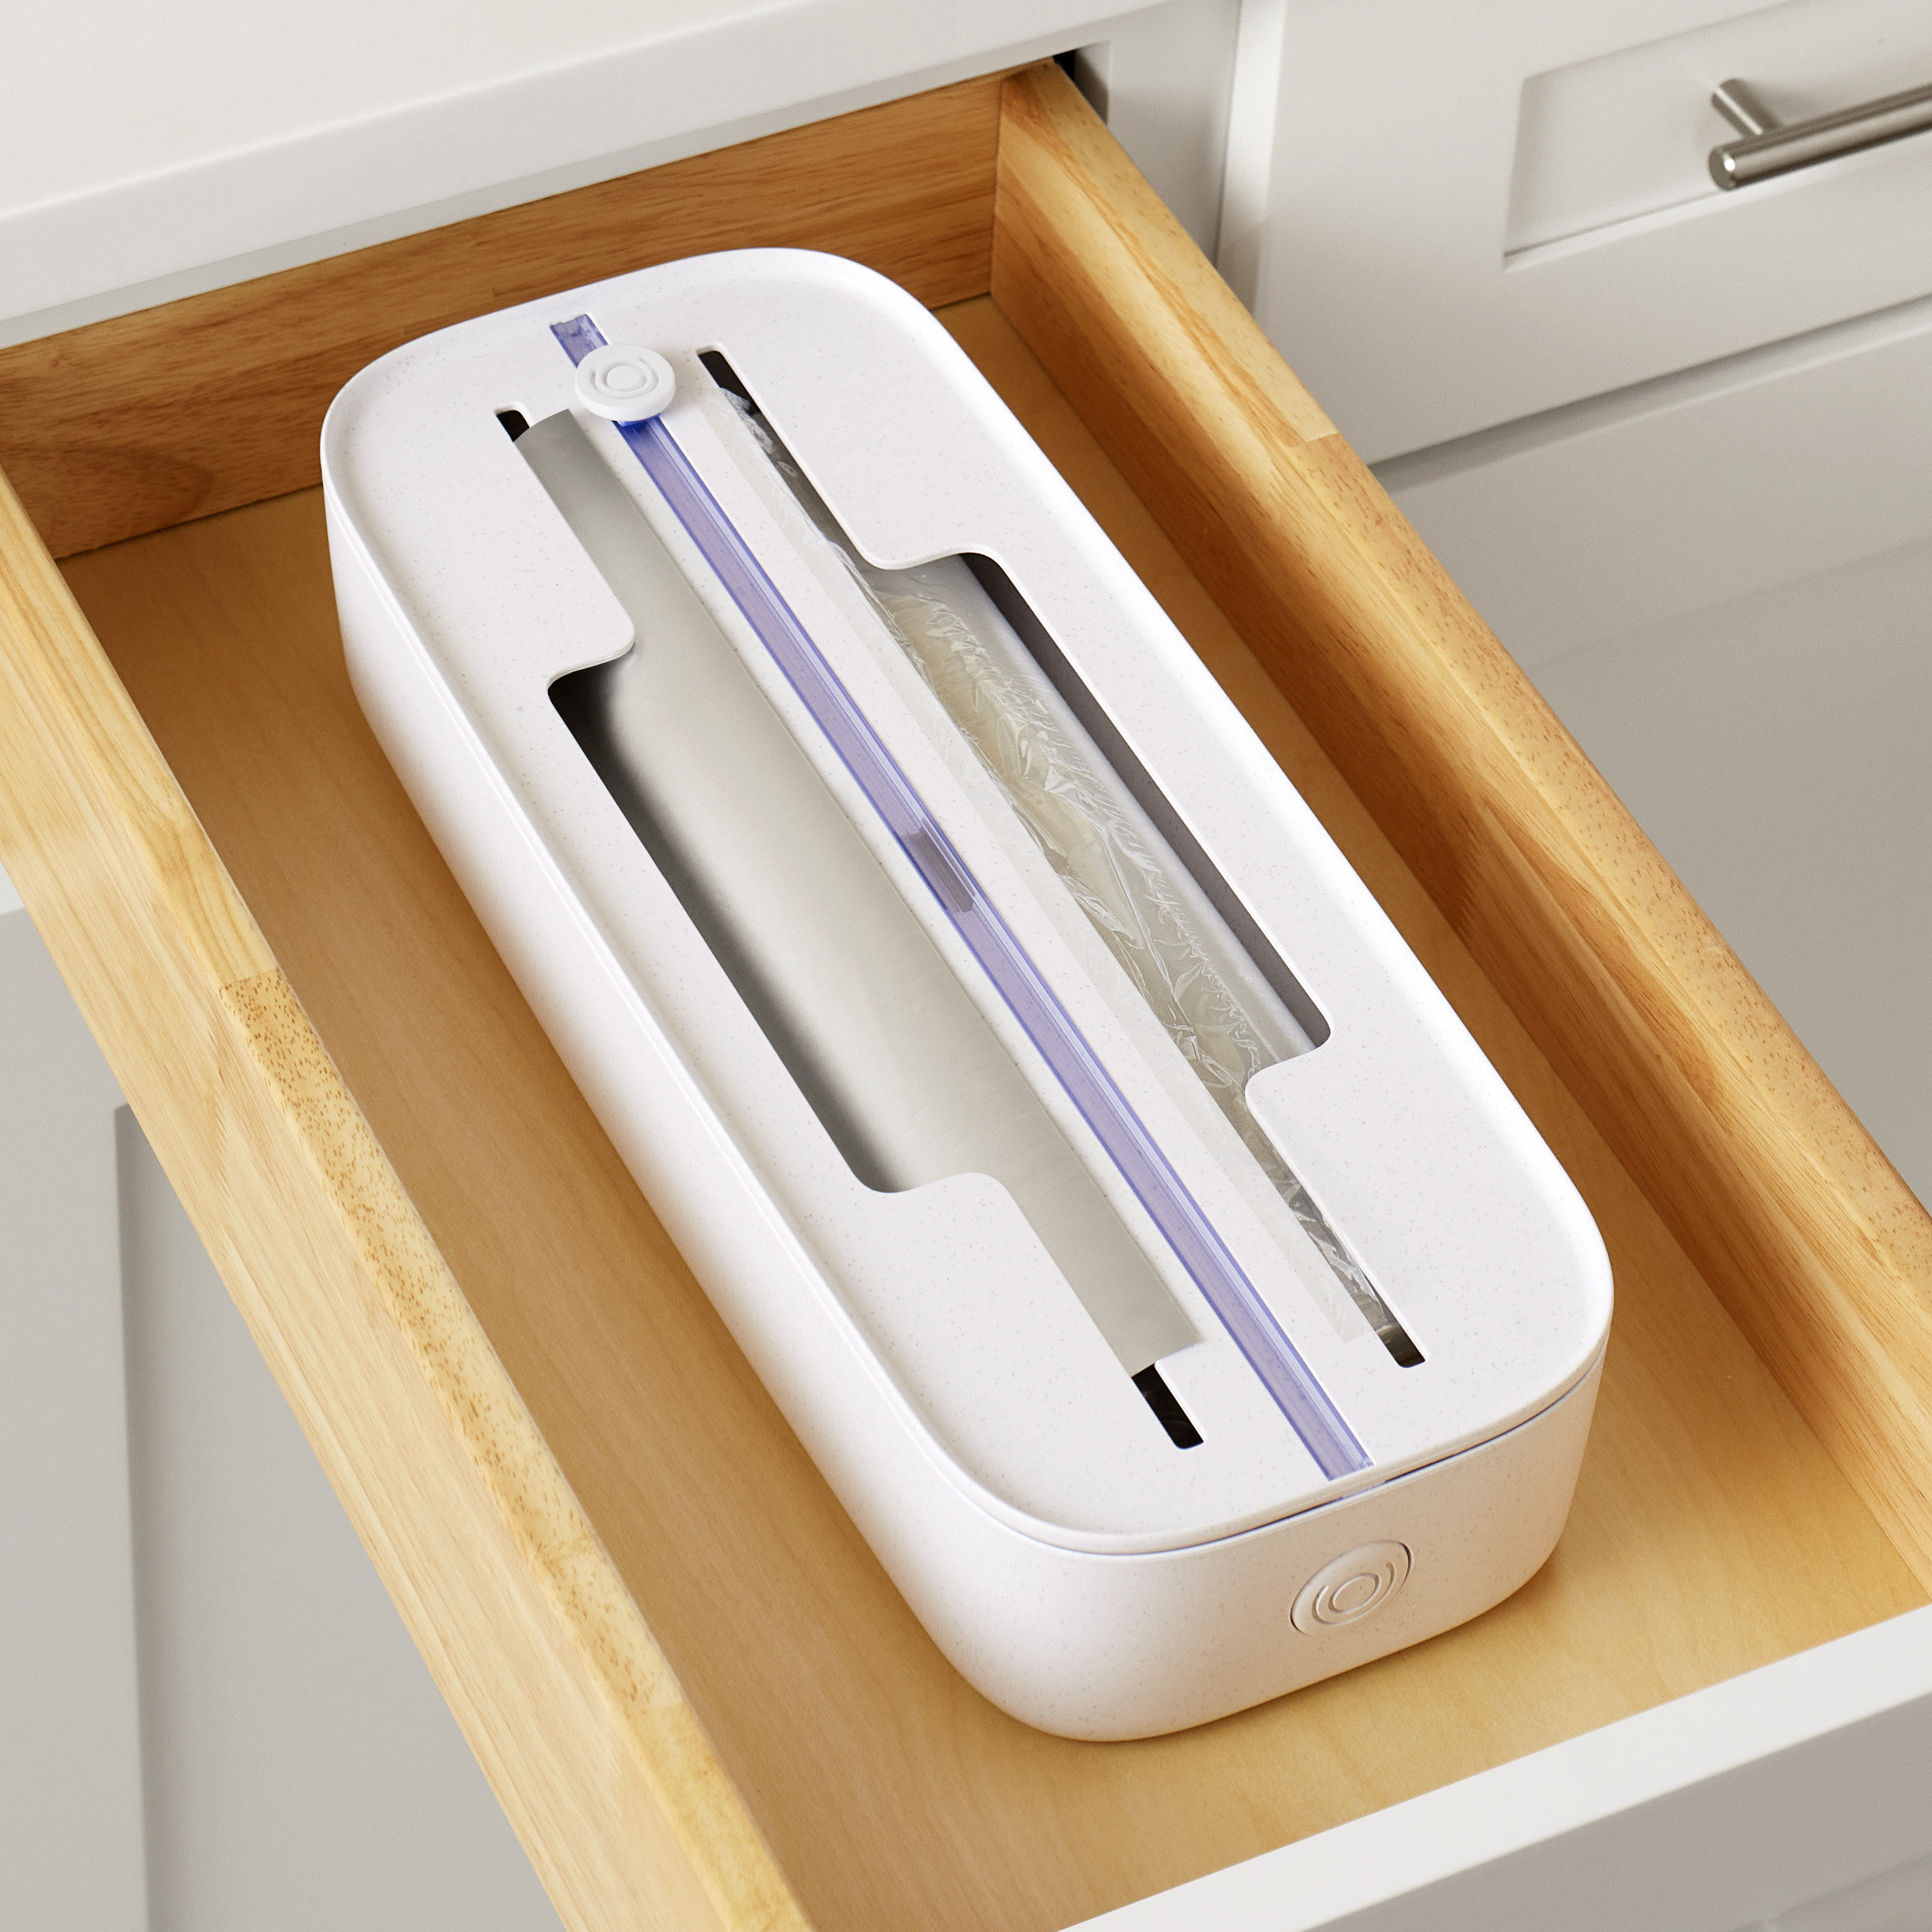 YouCopia DoorStash Dishwasher Pod Holder Review